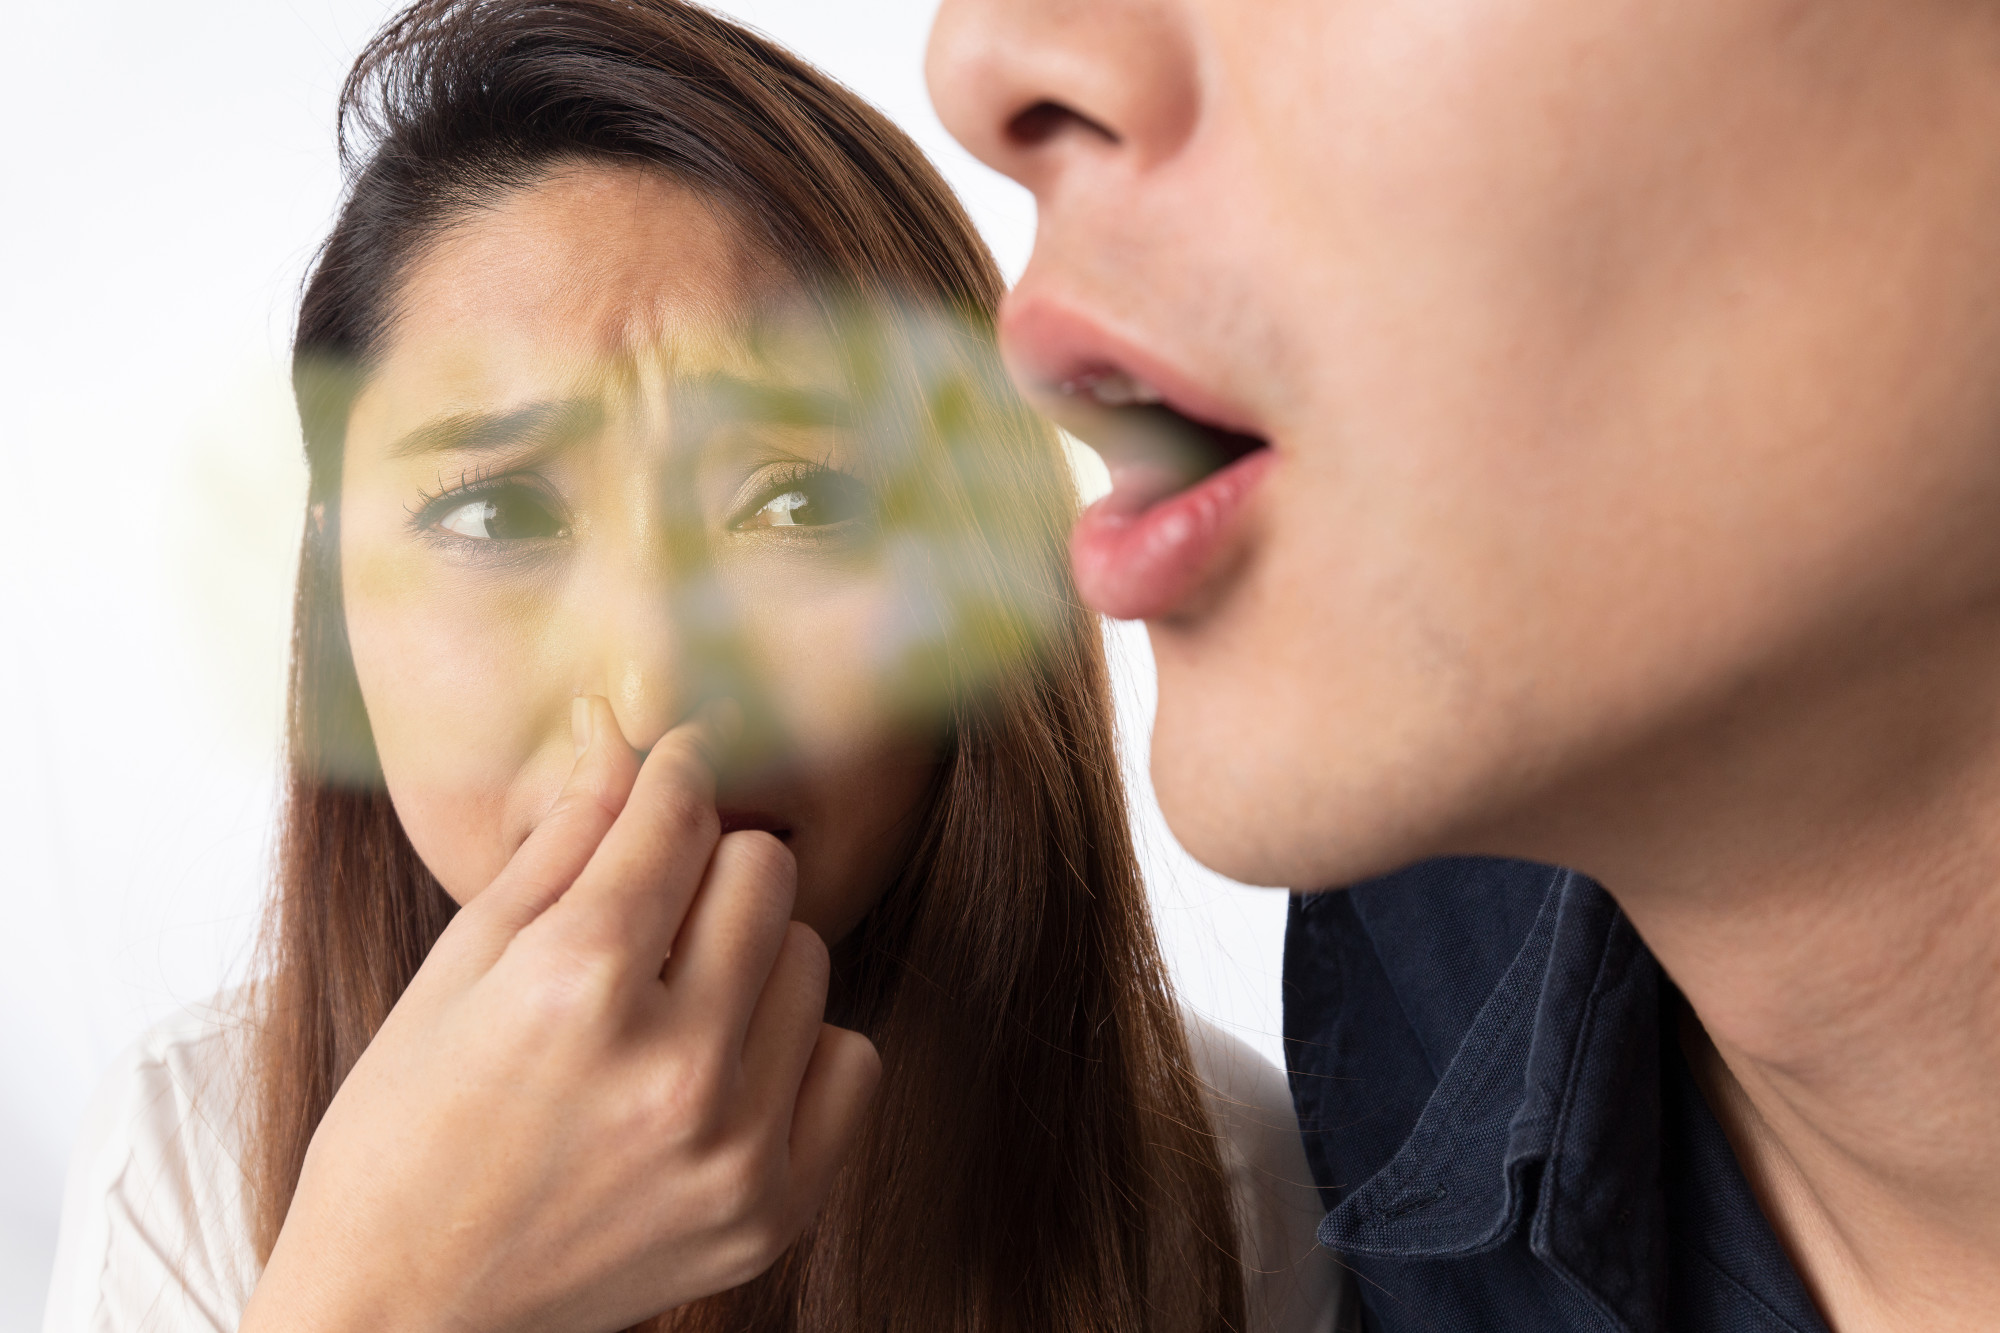 روش های خانگی برای از بین بردن بوی بد دهان